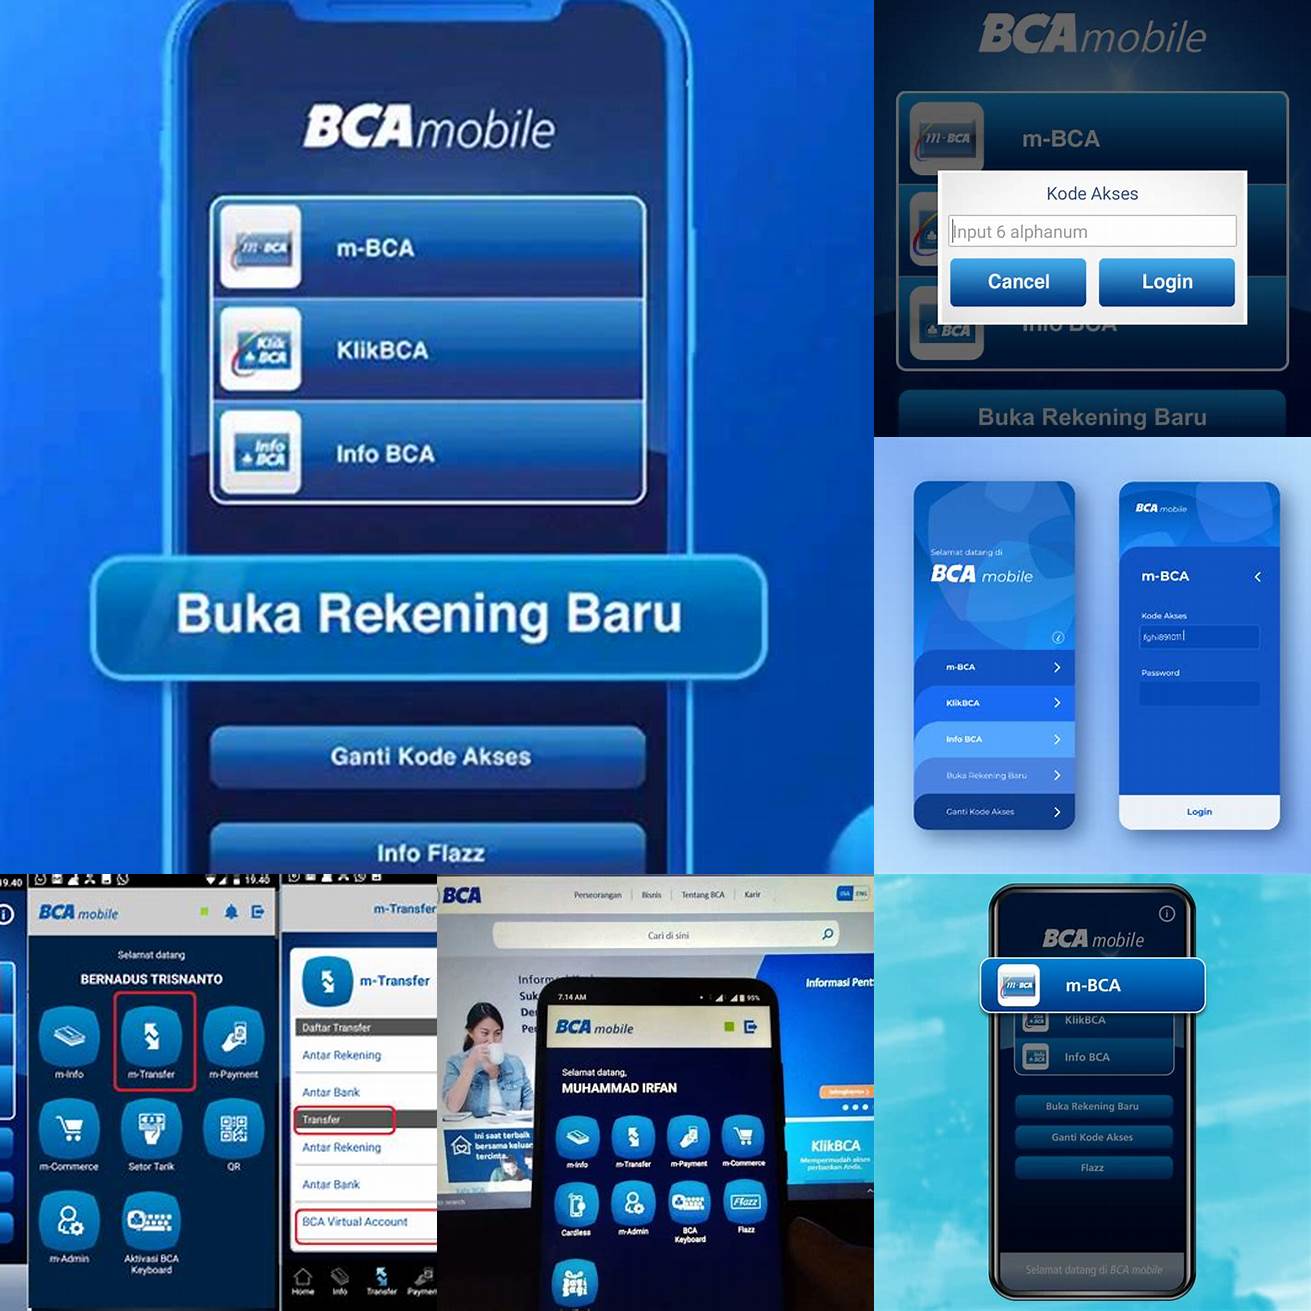 Pertama buka aplikasi BCA mobile dan login menggunakan user ID dan password Anda